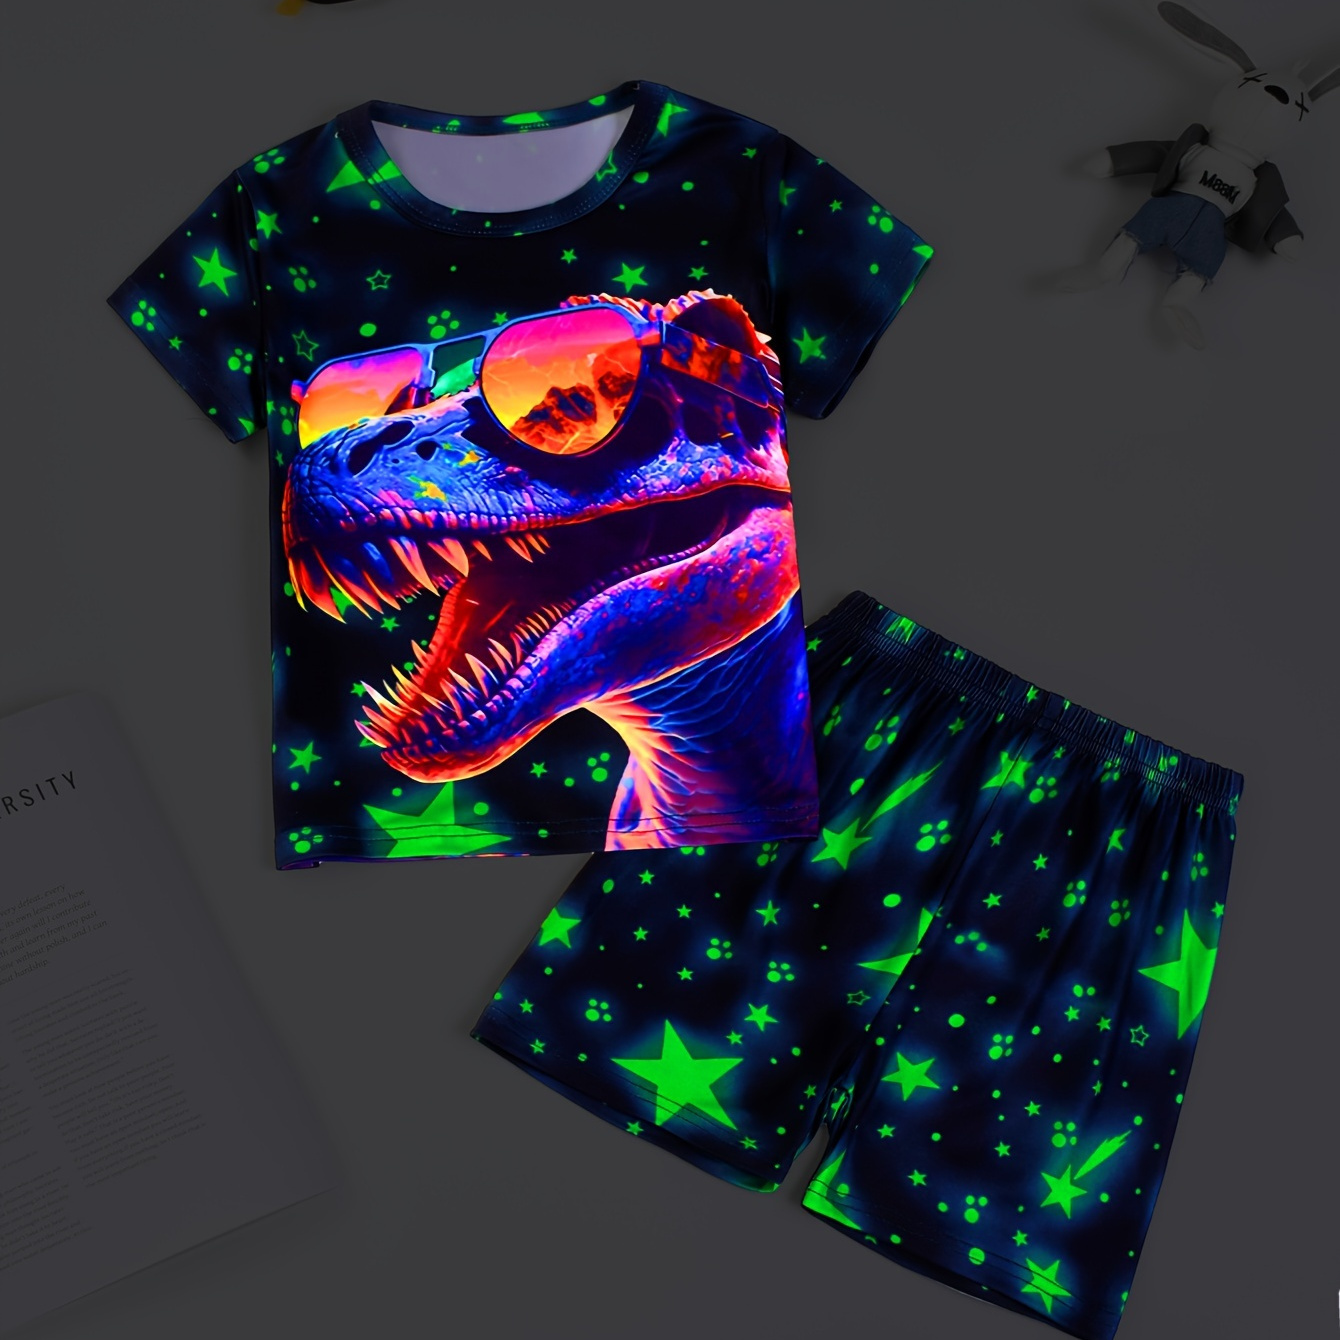 

Boys 2-piece Pajama Set Luminous Cartoon Dinosaur Print Crew Neck Short Sleeve T-shirt + Matching Shorts Comfy Loungewear